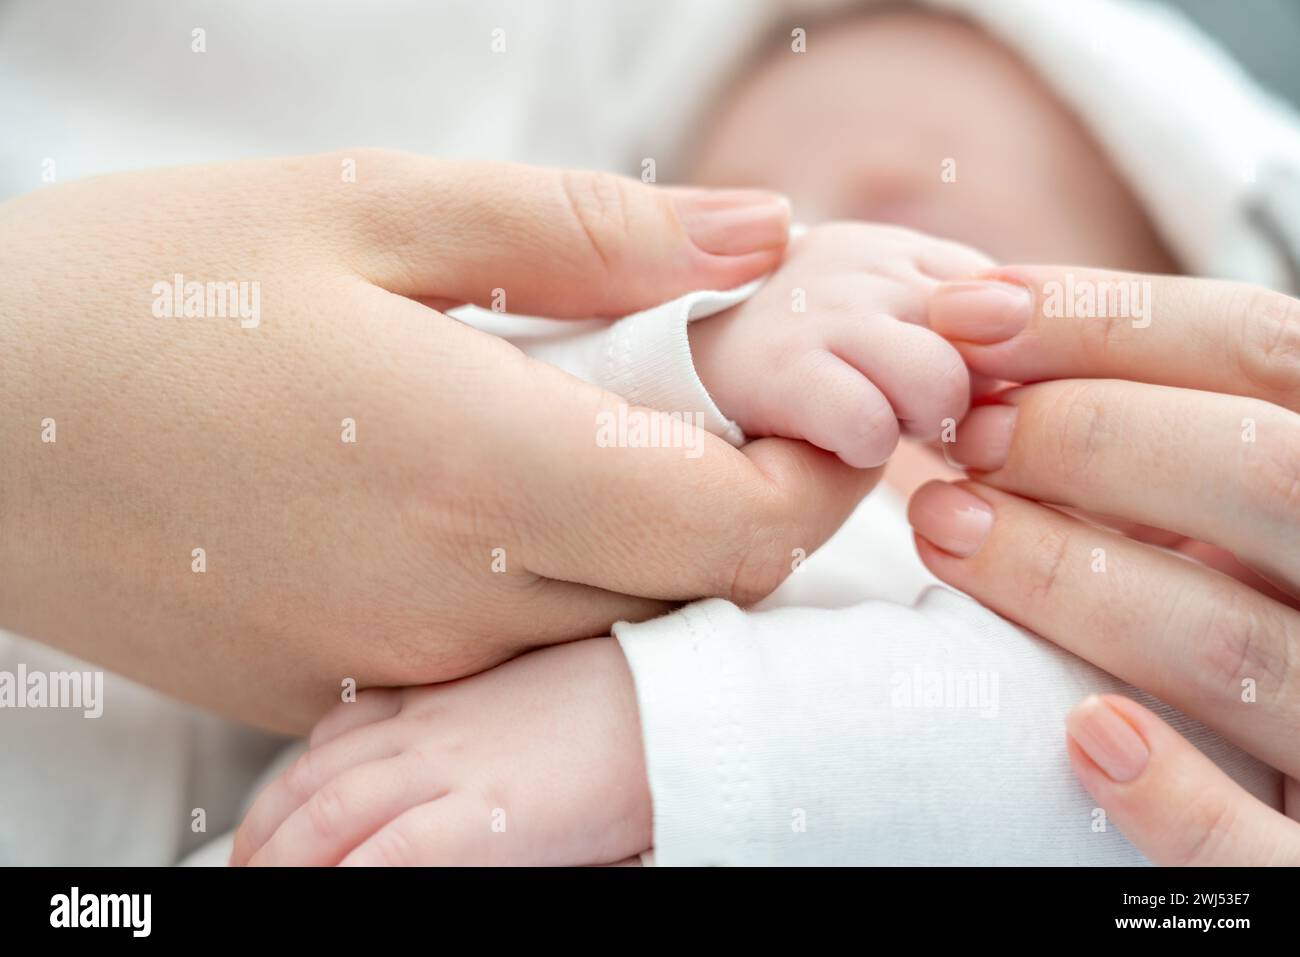 Le toucher rassurant de la mère calme un nouveau-né malade. Concept du pouvoir curatif du lien maternel Banque D'Images